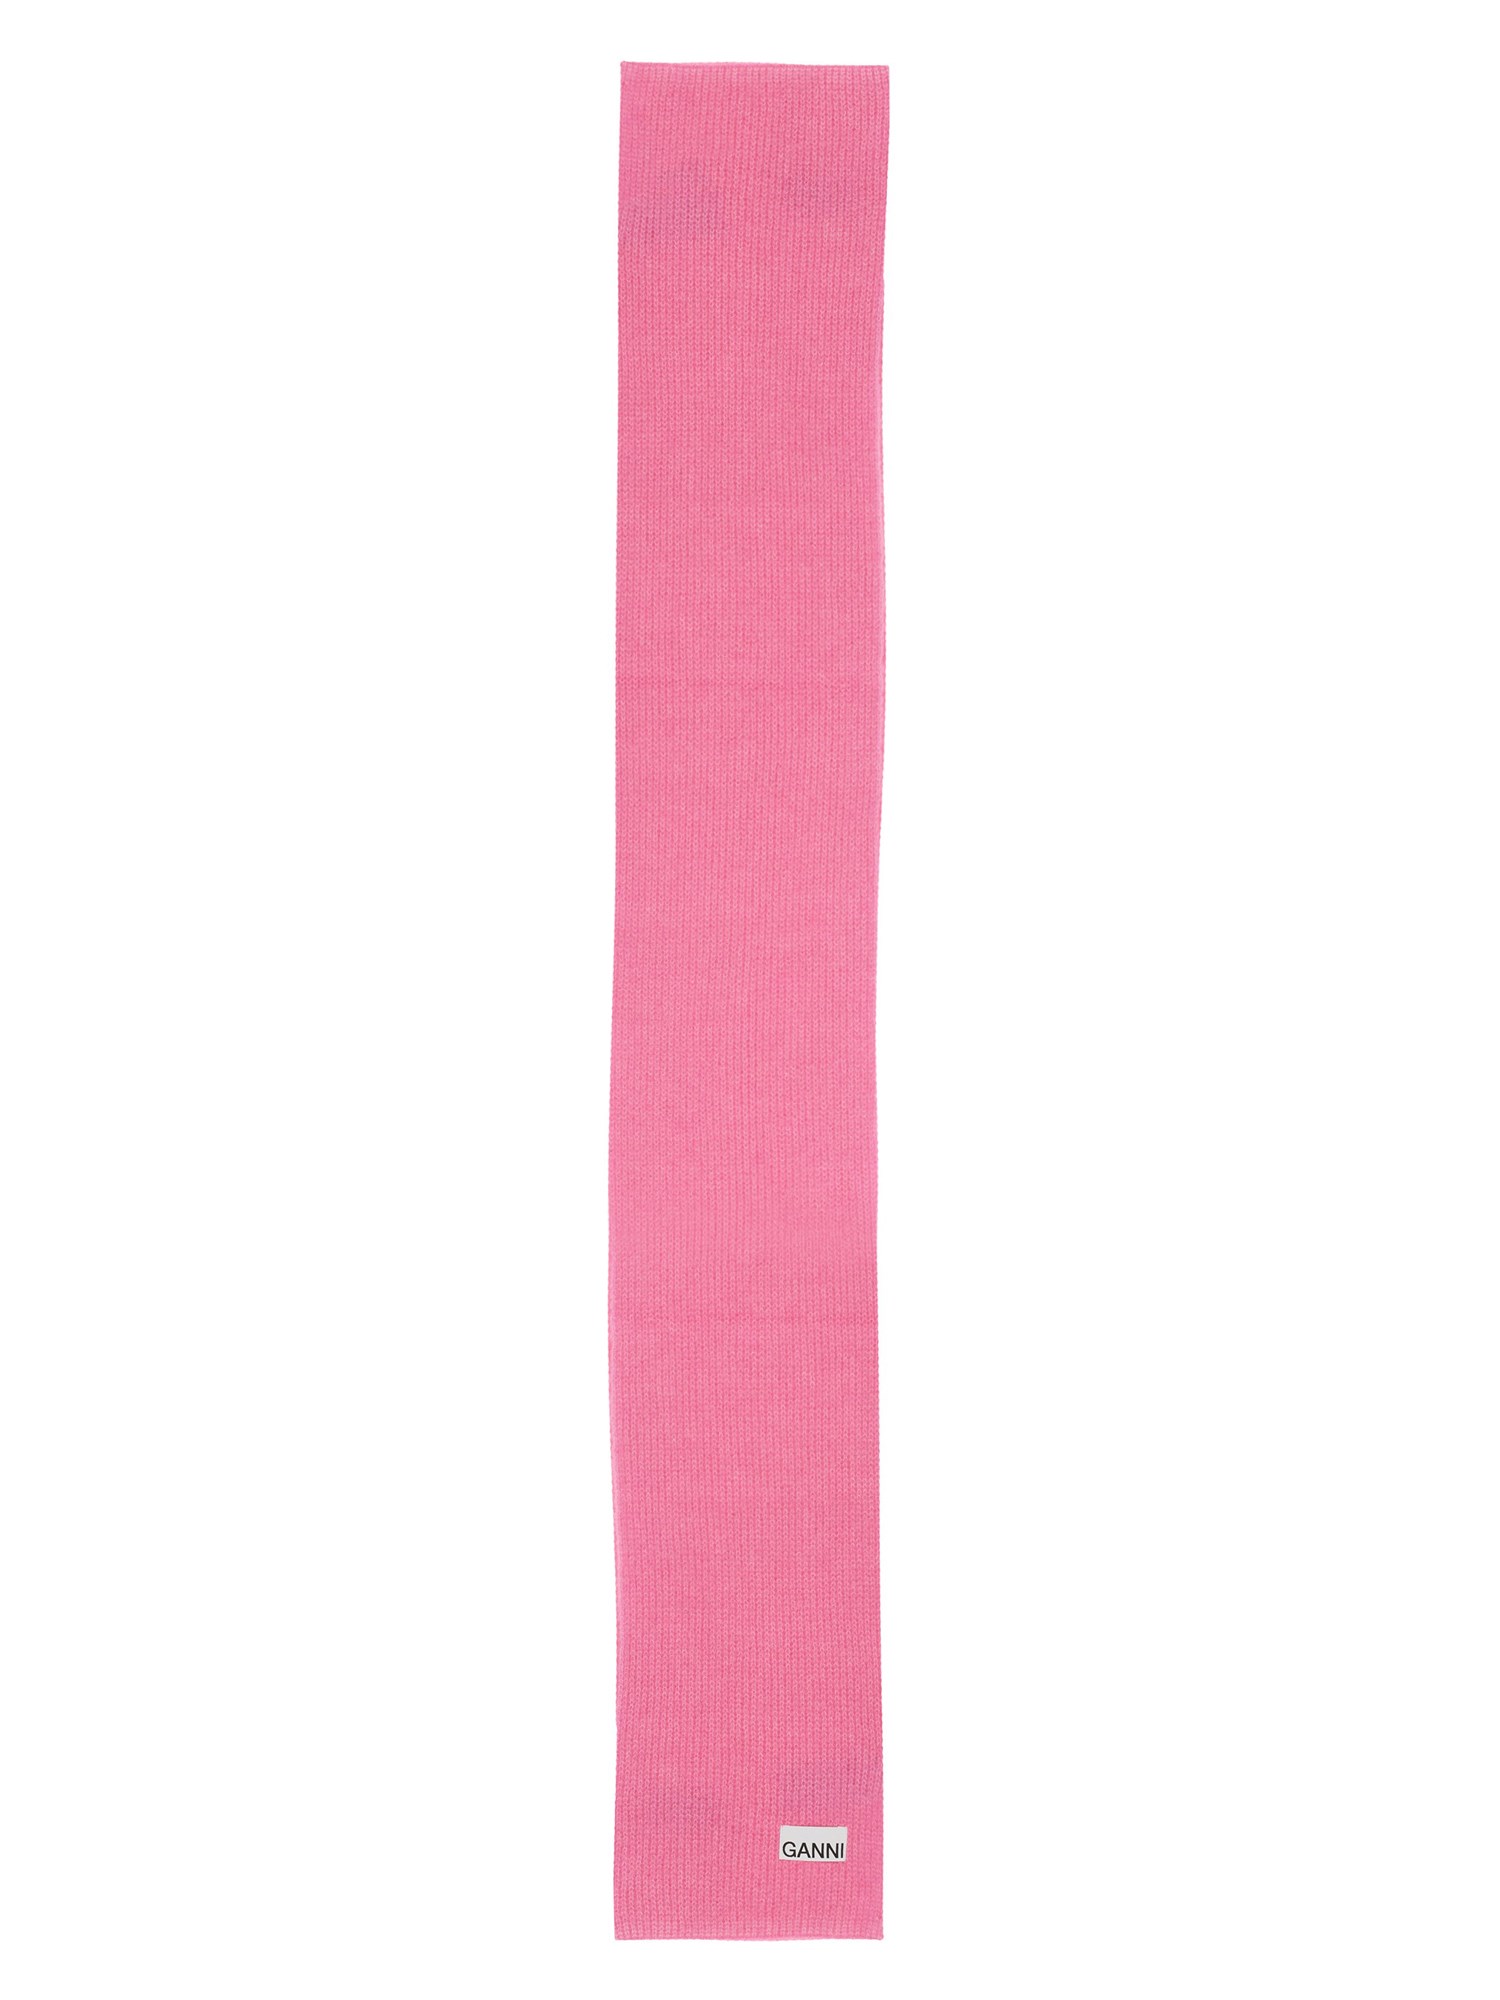 ganni scarf with logo